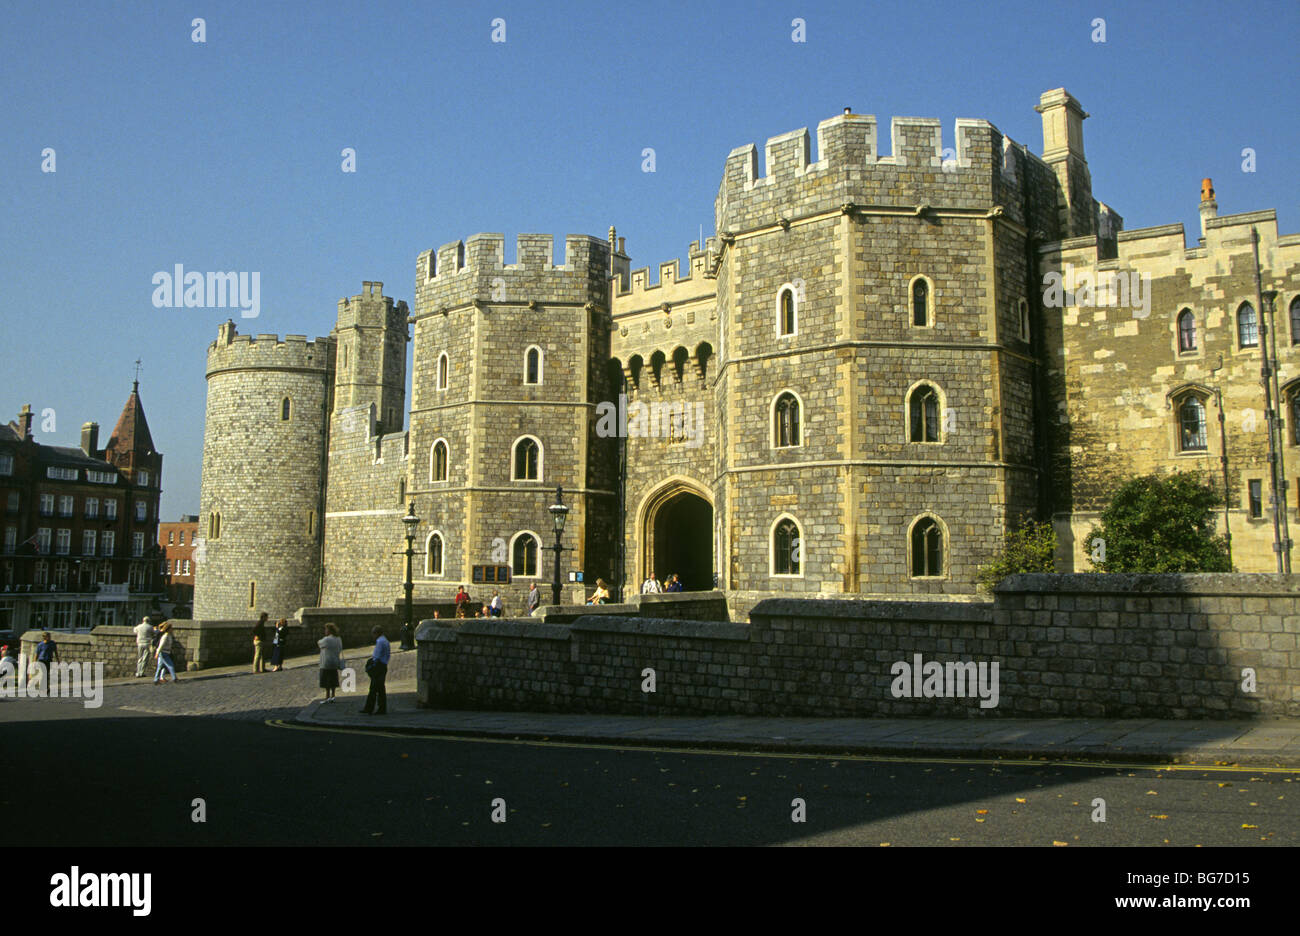 La porte et les murs du château de Windsor, résidence de la Reine d'Angleterre, à Windsor, Berkshire, Angleterre Banque D'Images